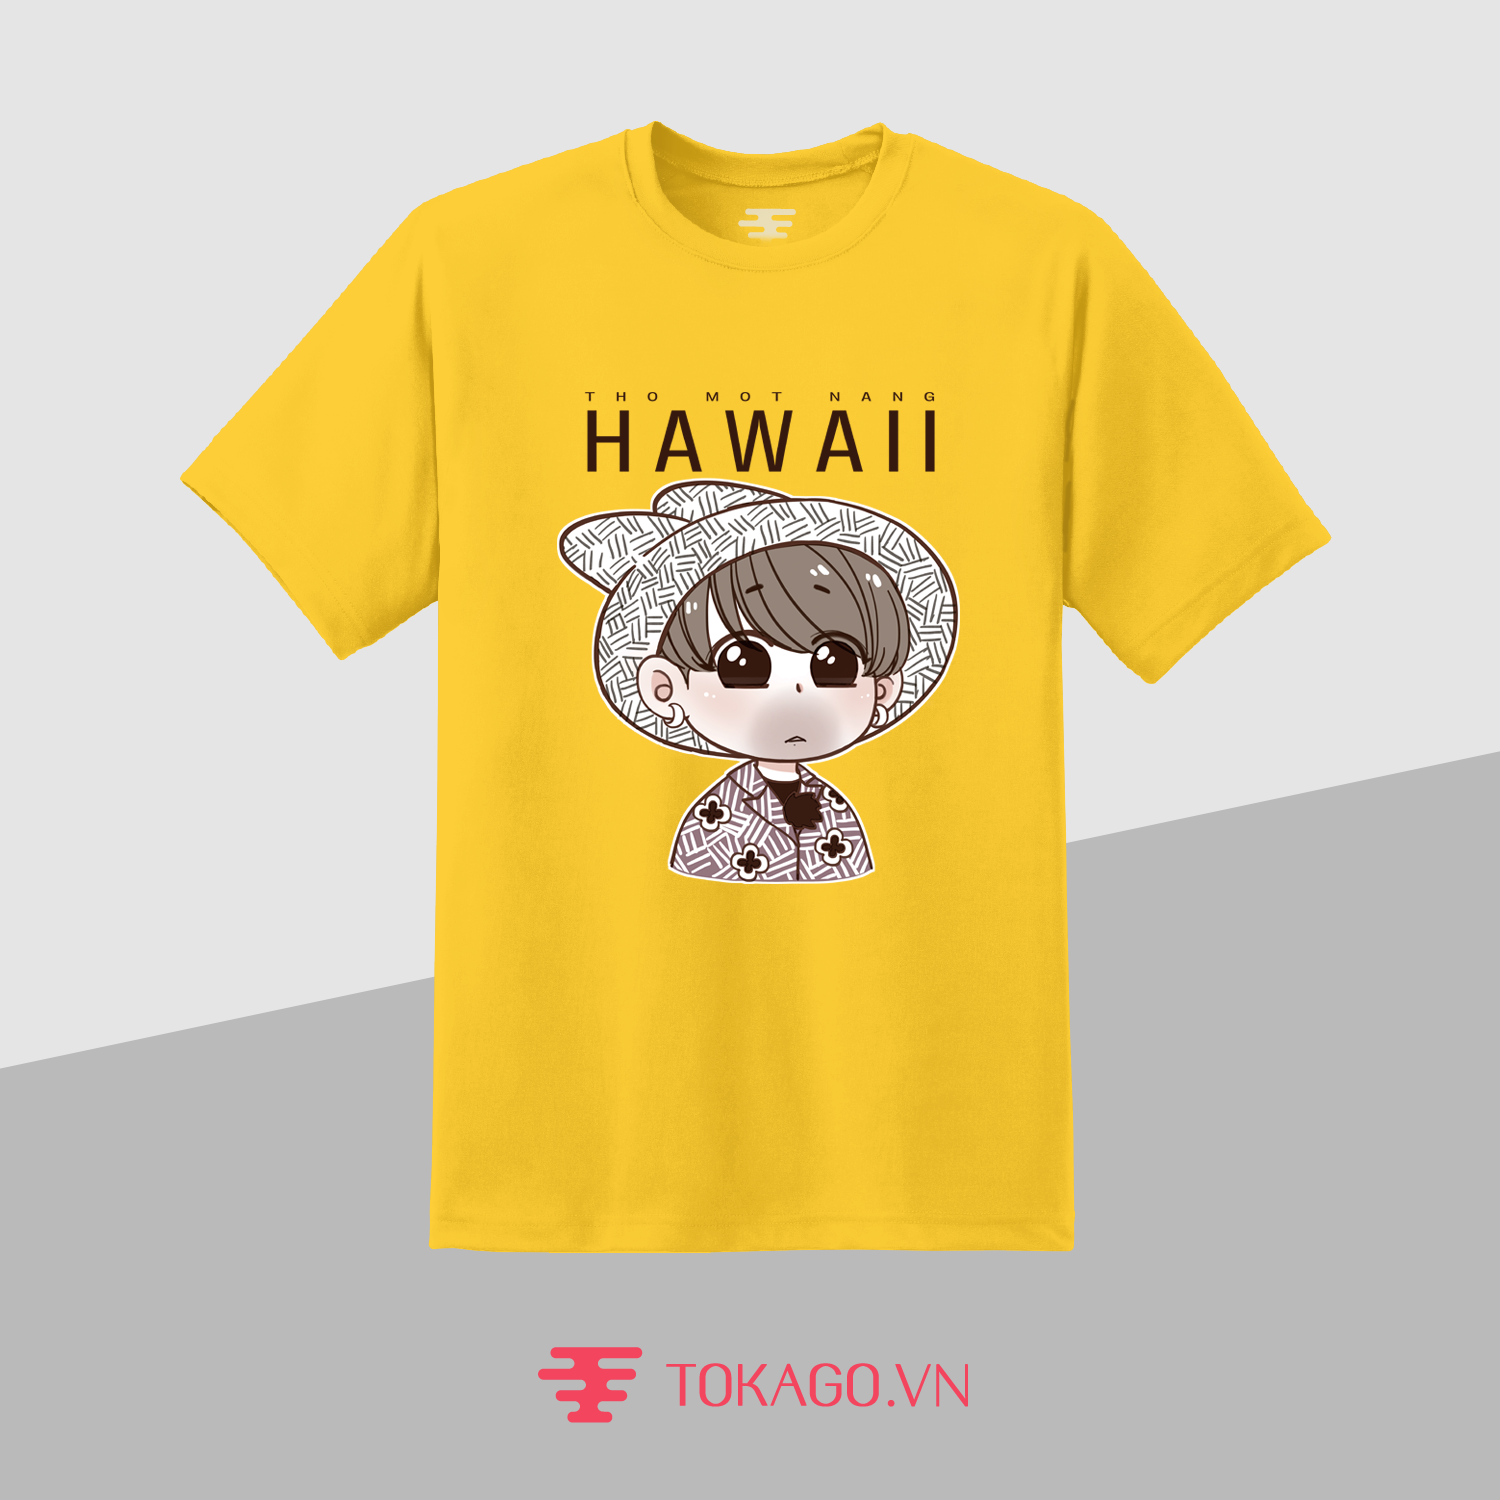  Thỏ một nắng Hawaii (áo Cúc)